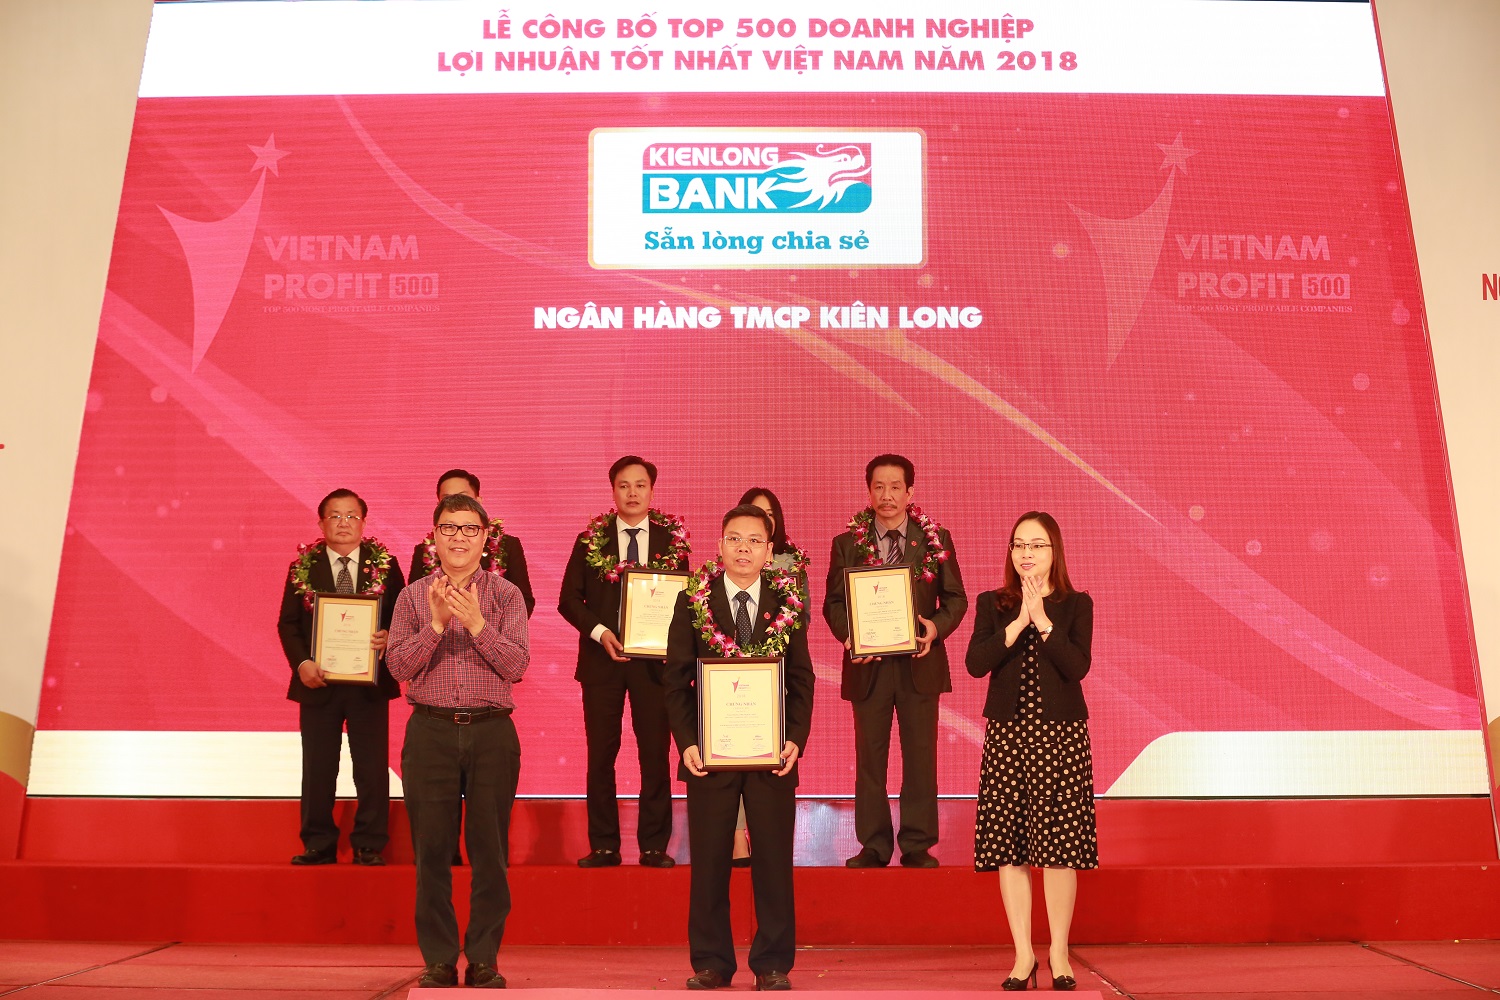 02 năm liên tiếp Kienlongbank nằm trong Top 500 doanh nghiệp Lợi nhuận tốt nhất Việt Nam